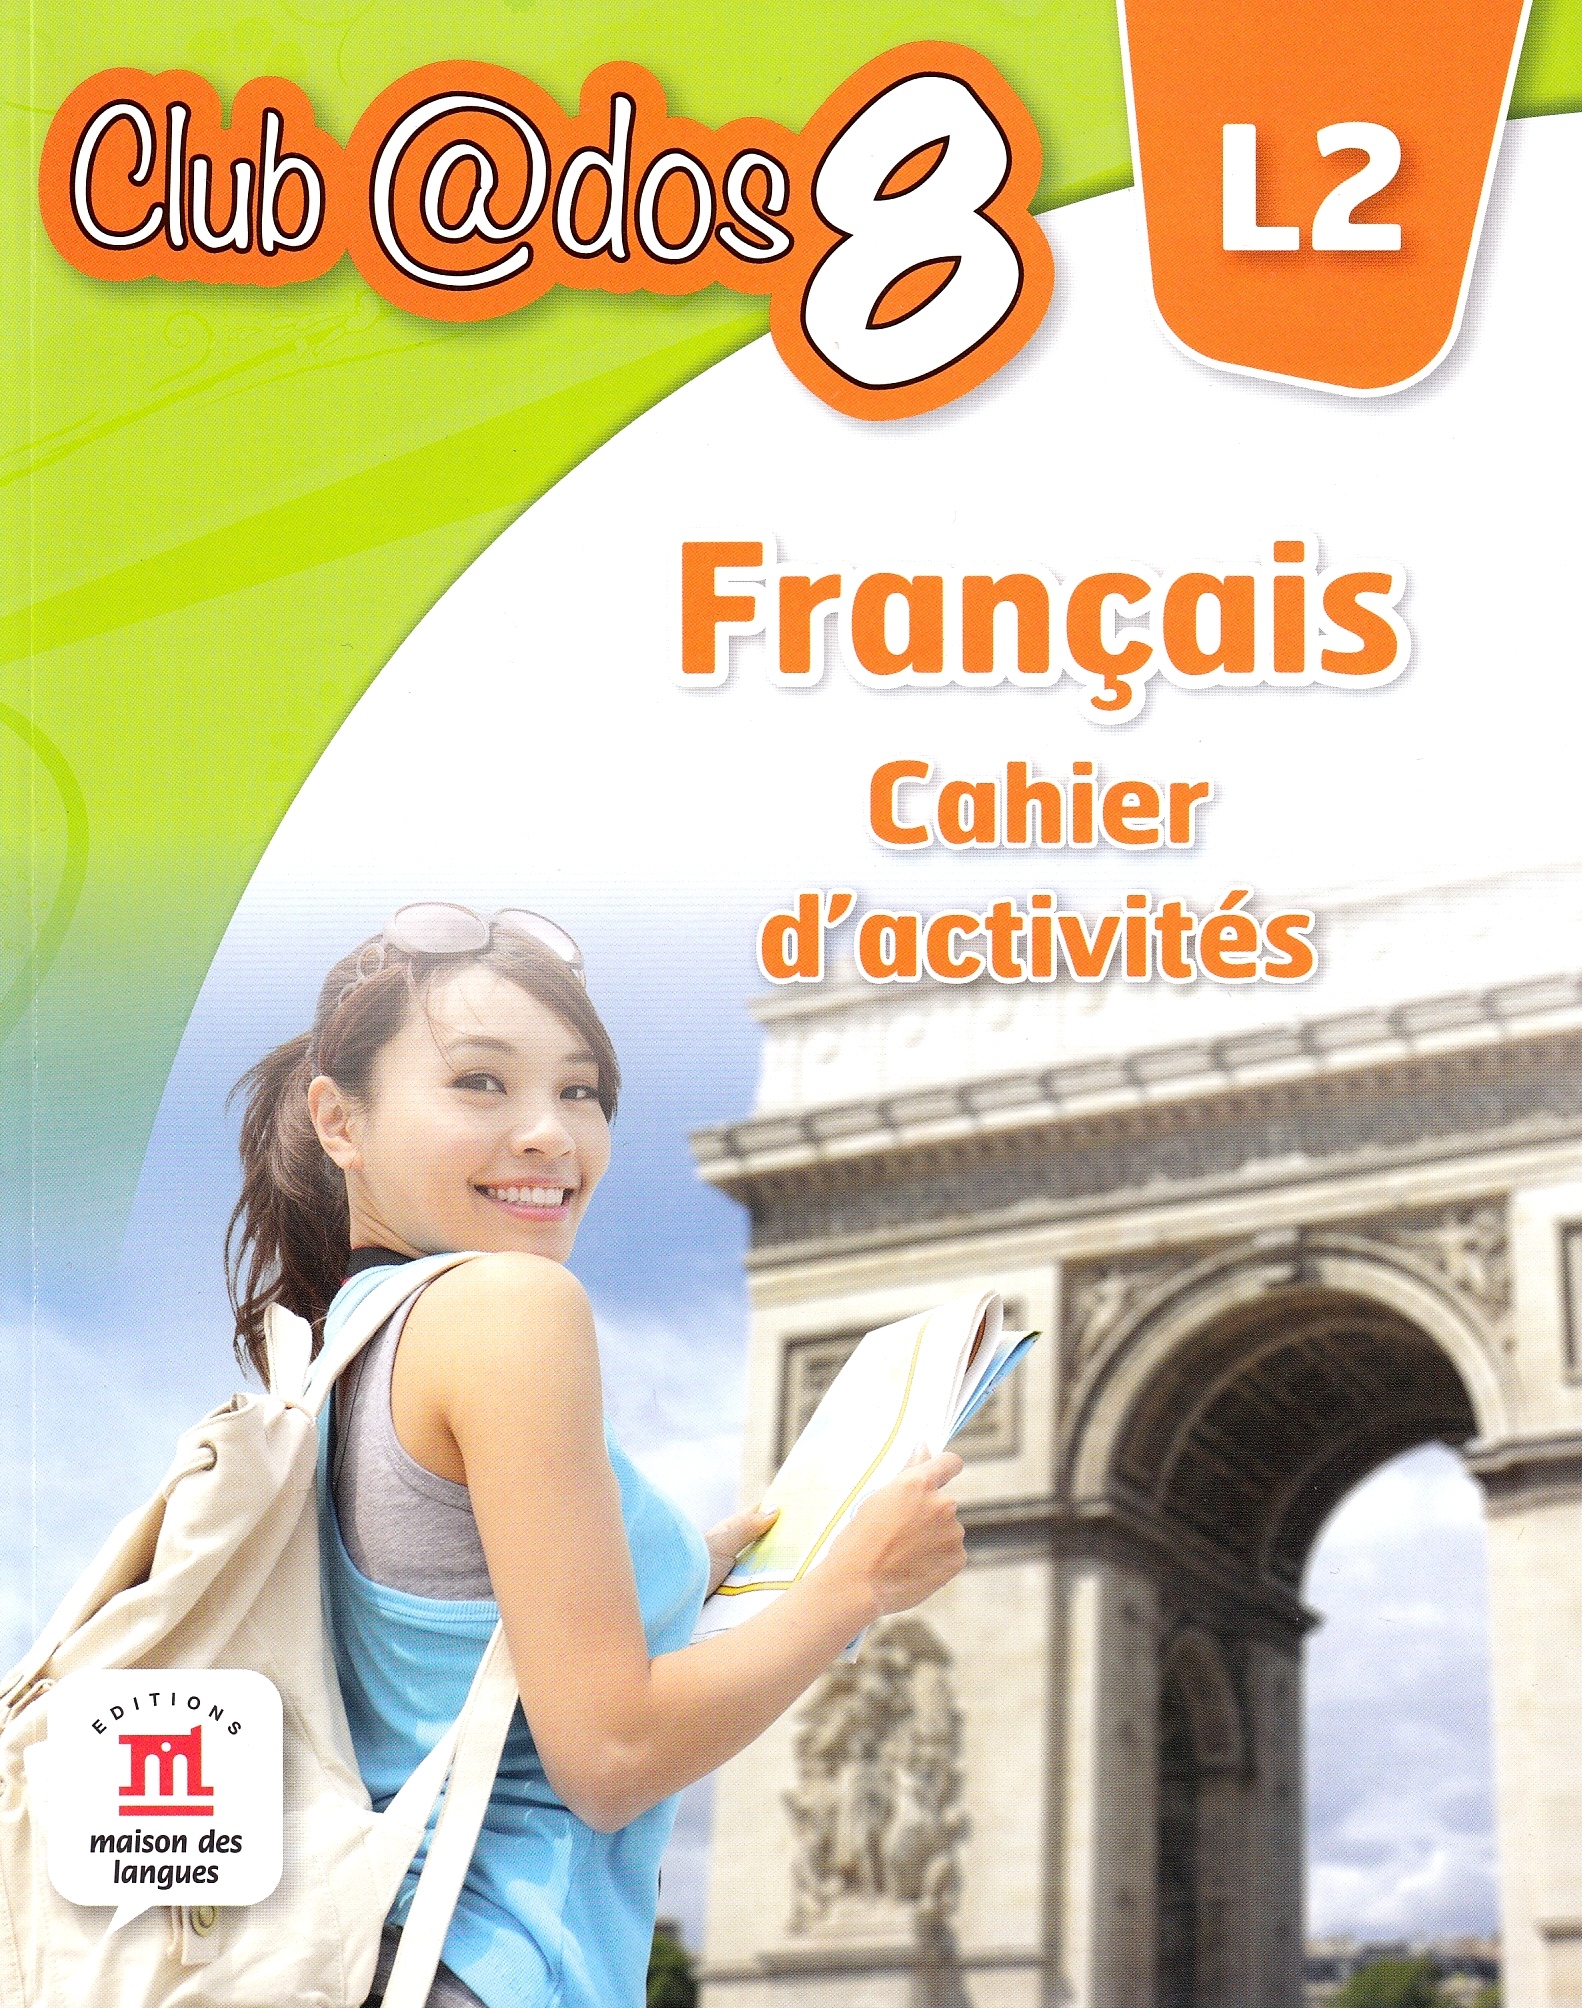 Club Dos. Francais L2. Cahier d'activites. Lectia de franceza - Clasa 8 - Raisa Elena Vlad, Dorin Gulie